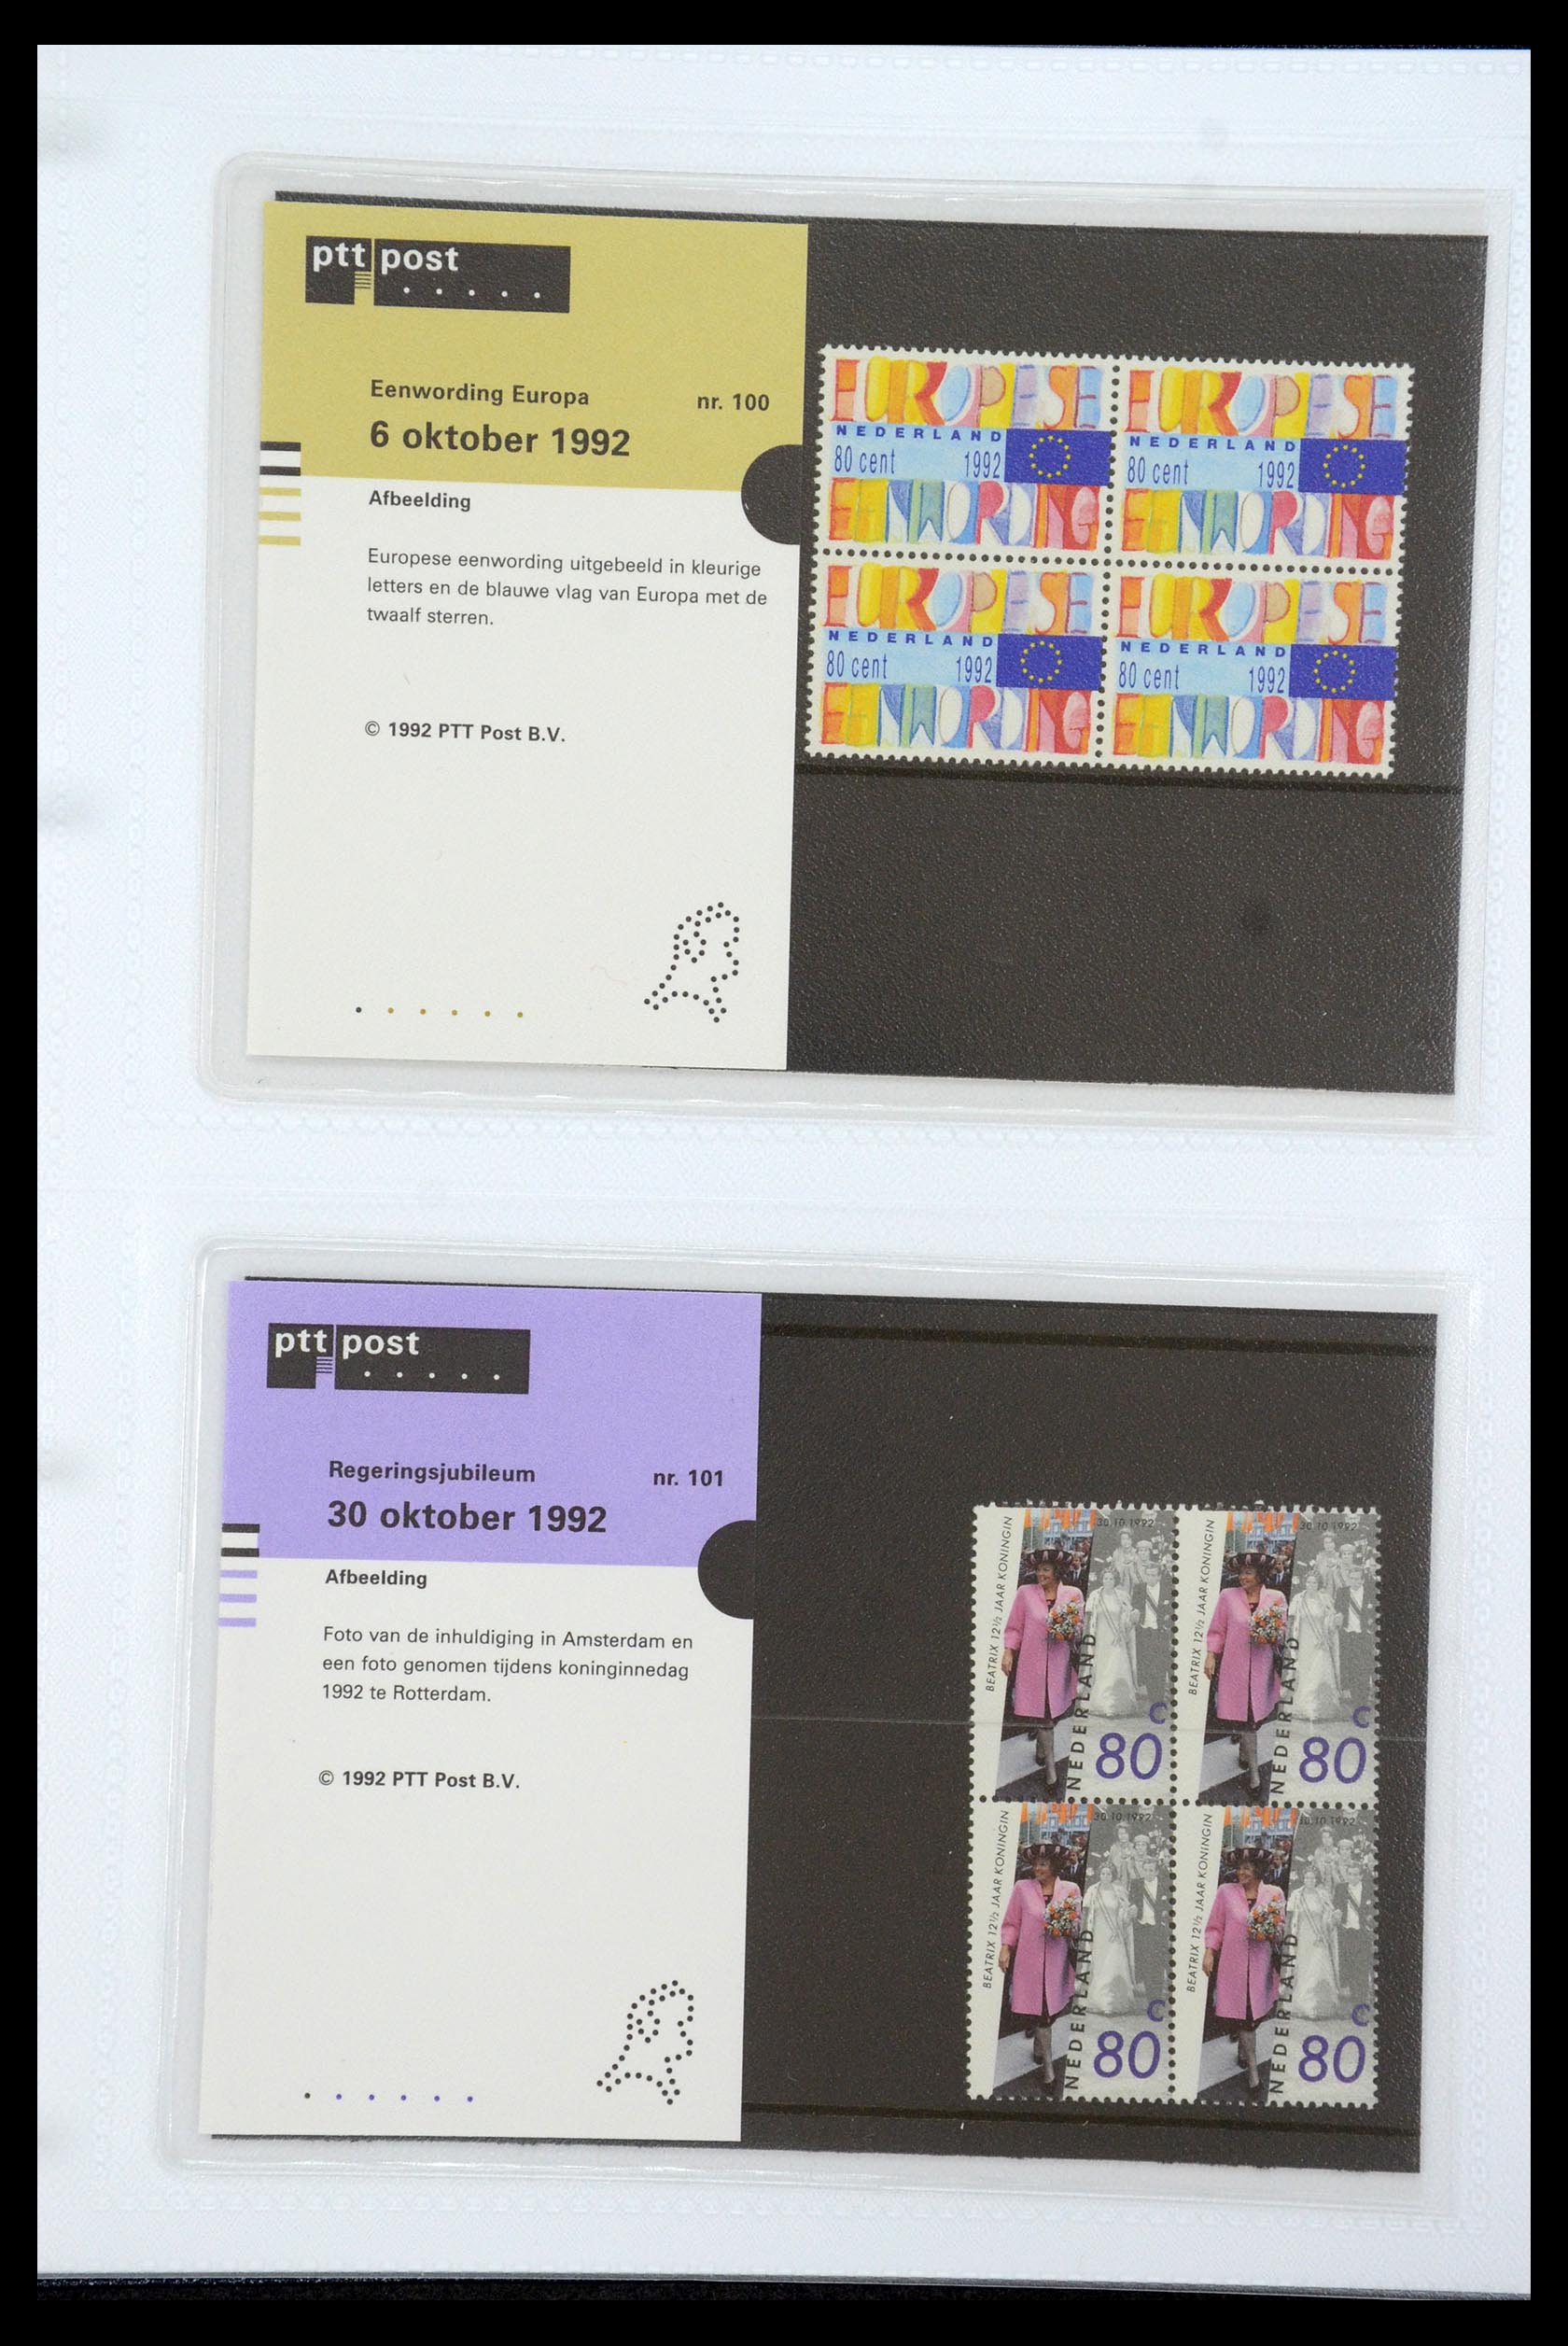 35947 052 - Stamp Collection 35947 Netherlands PTT presentation packs 1982-2019!